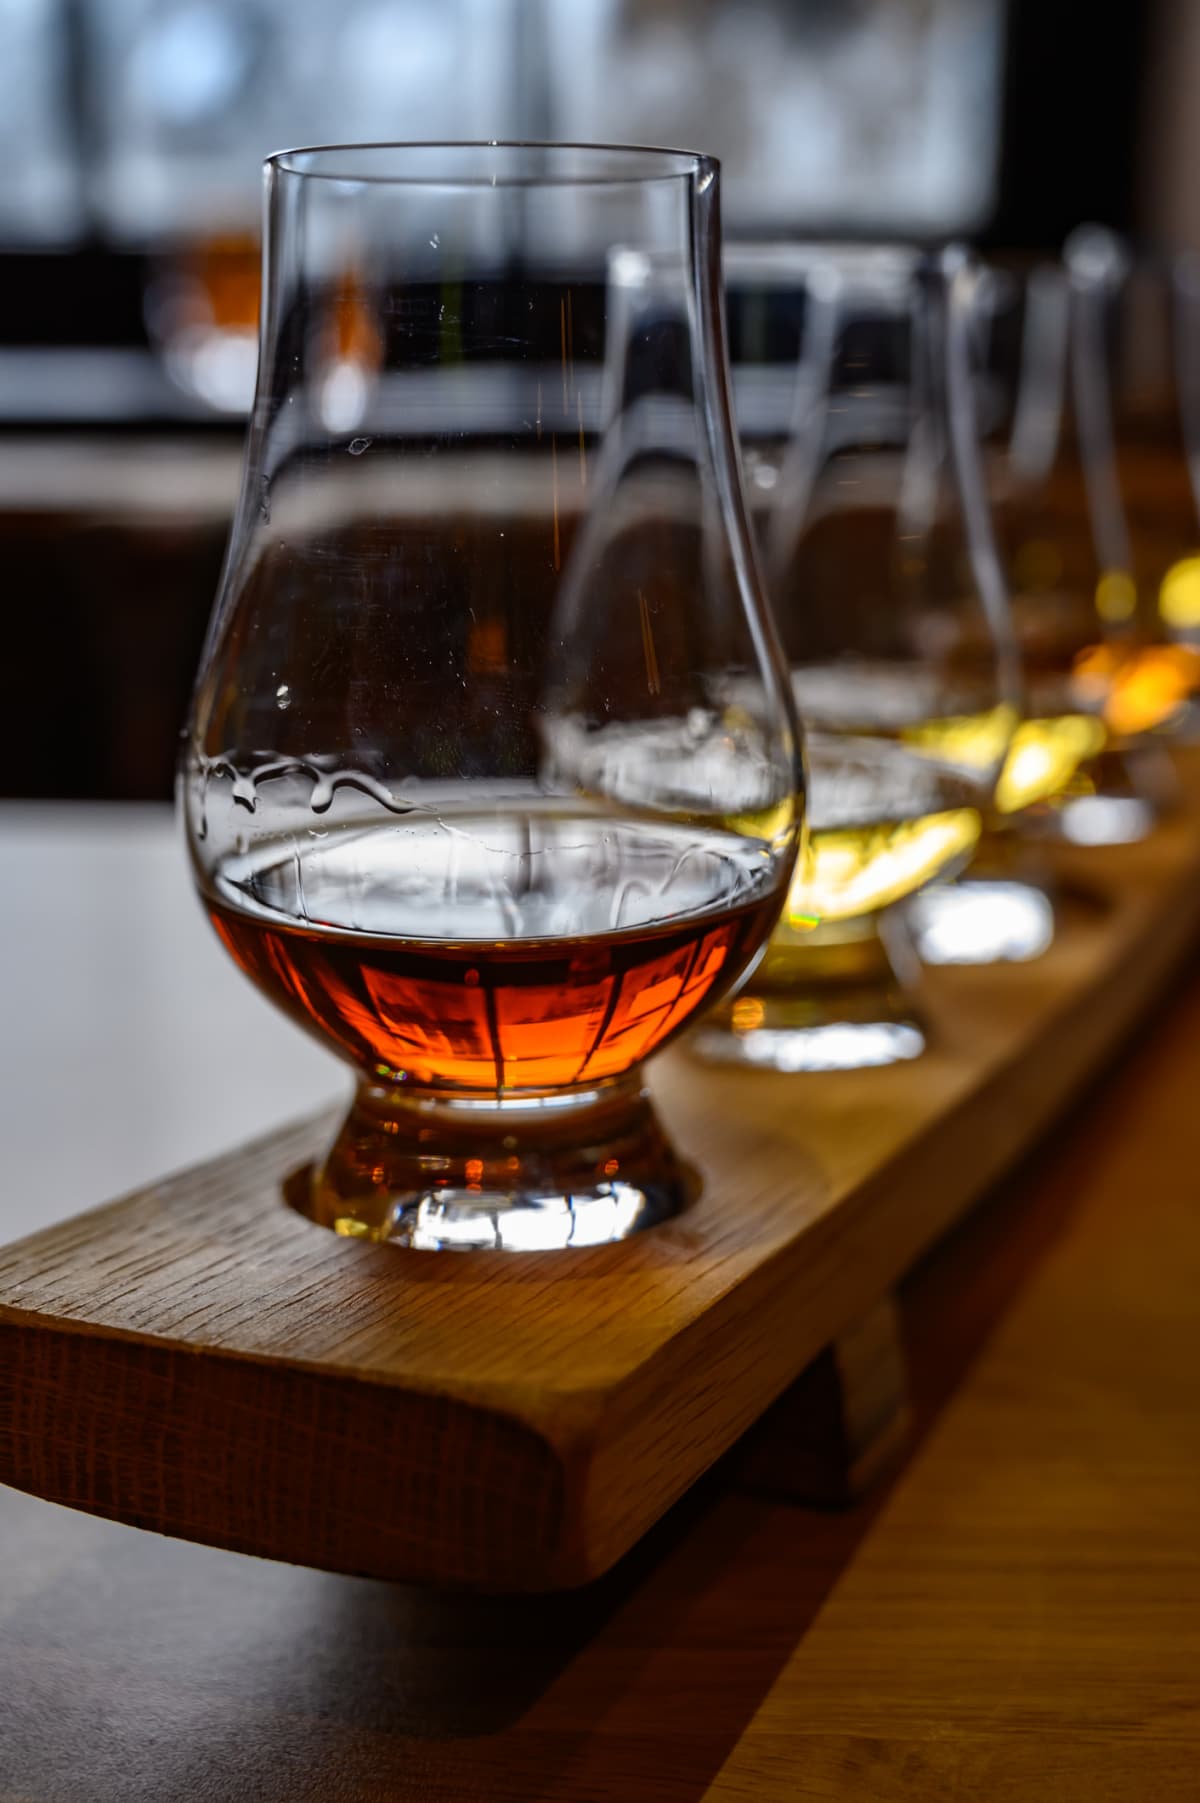 Tasting glasses of various whiskeys